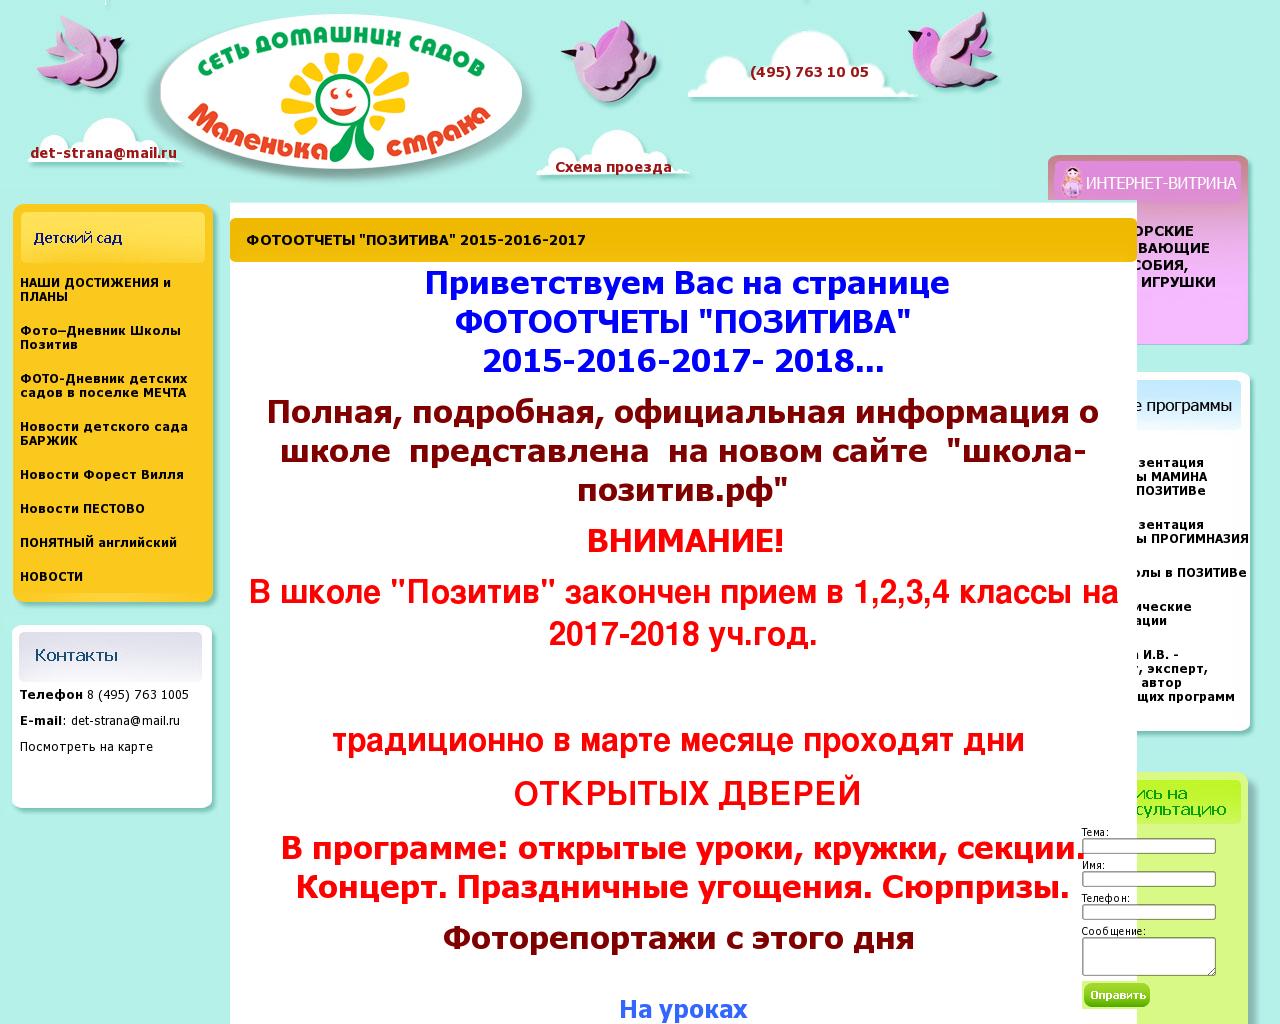 Изображение сайта det-strana.ru в разрешении 1280x1024